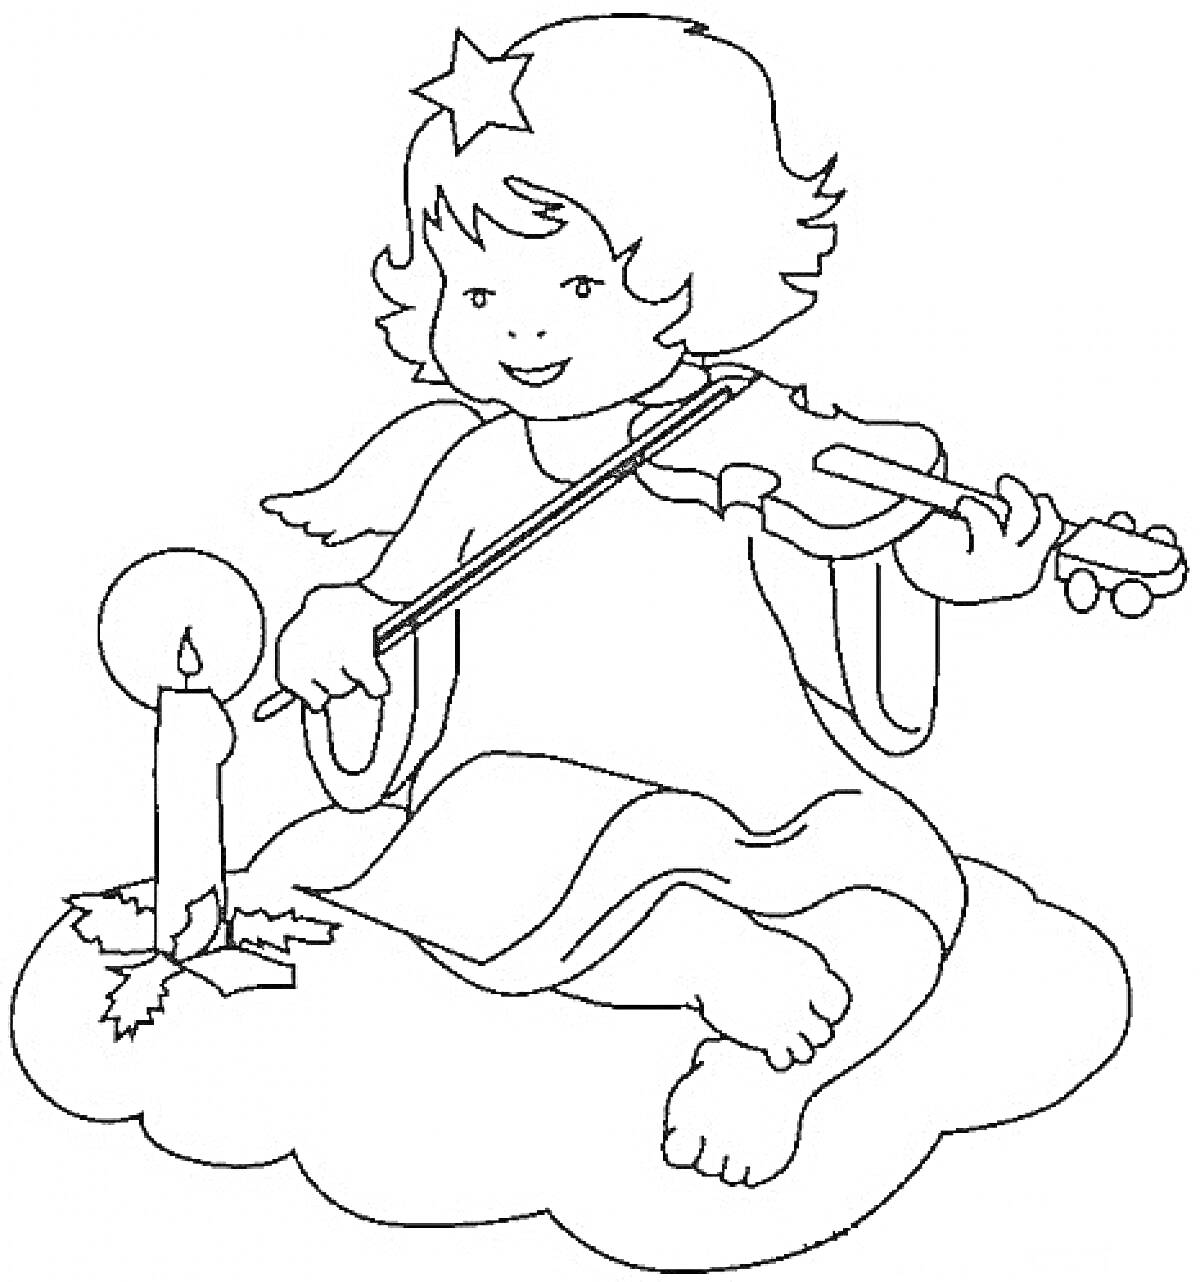 Рождественский ангел, сидящий на облаке, играющий на скрипке рядом со свечой